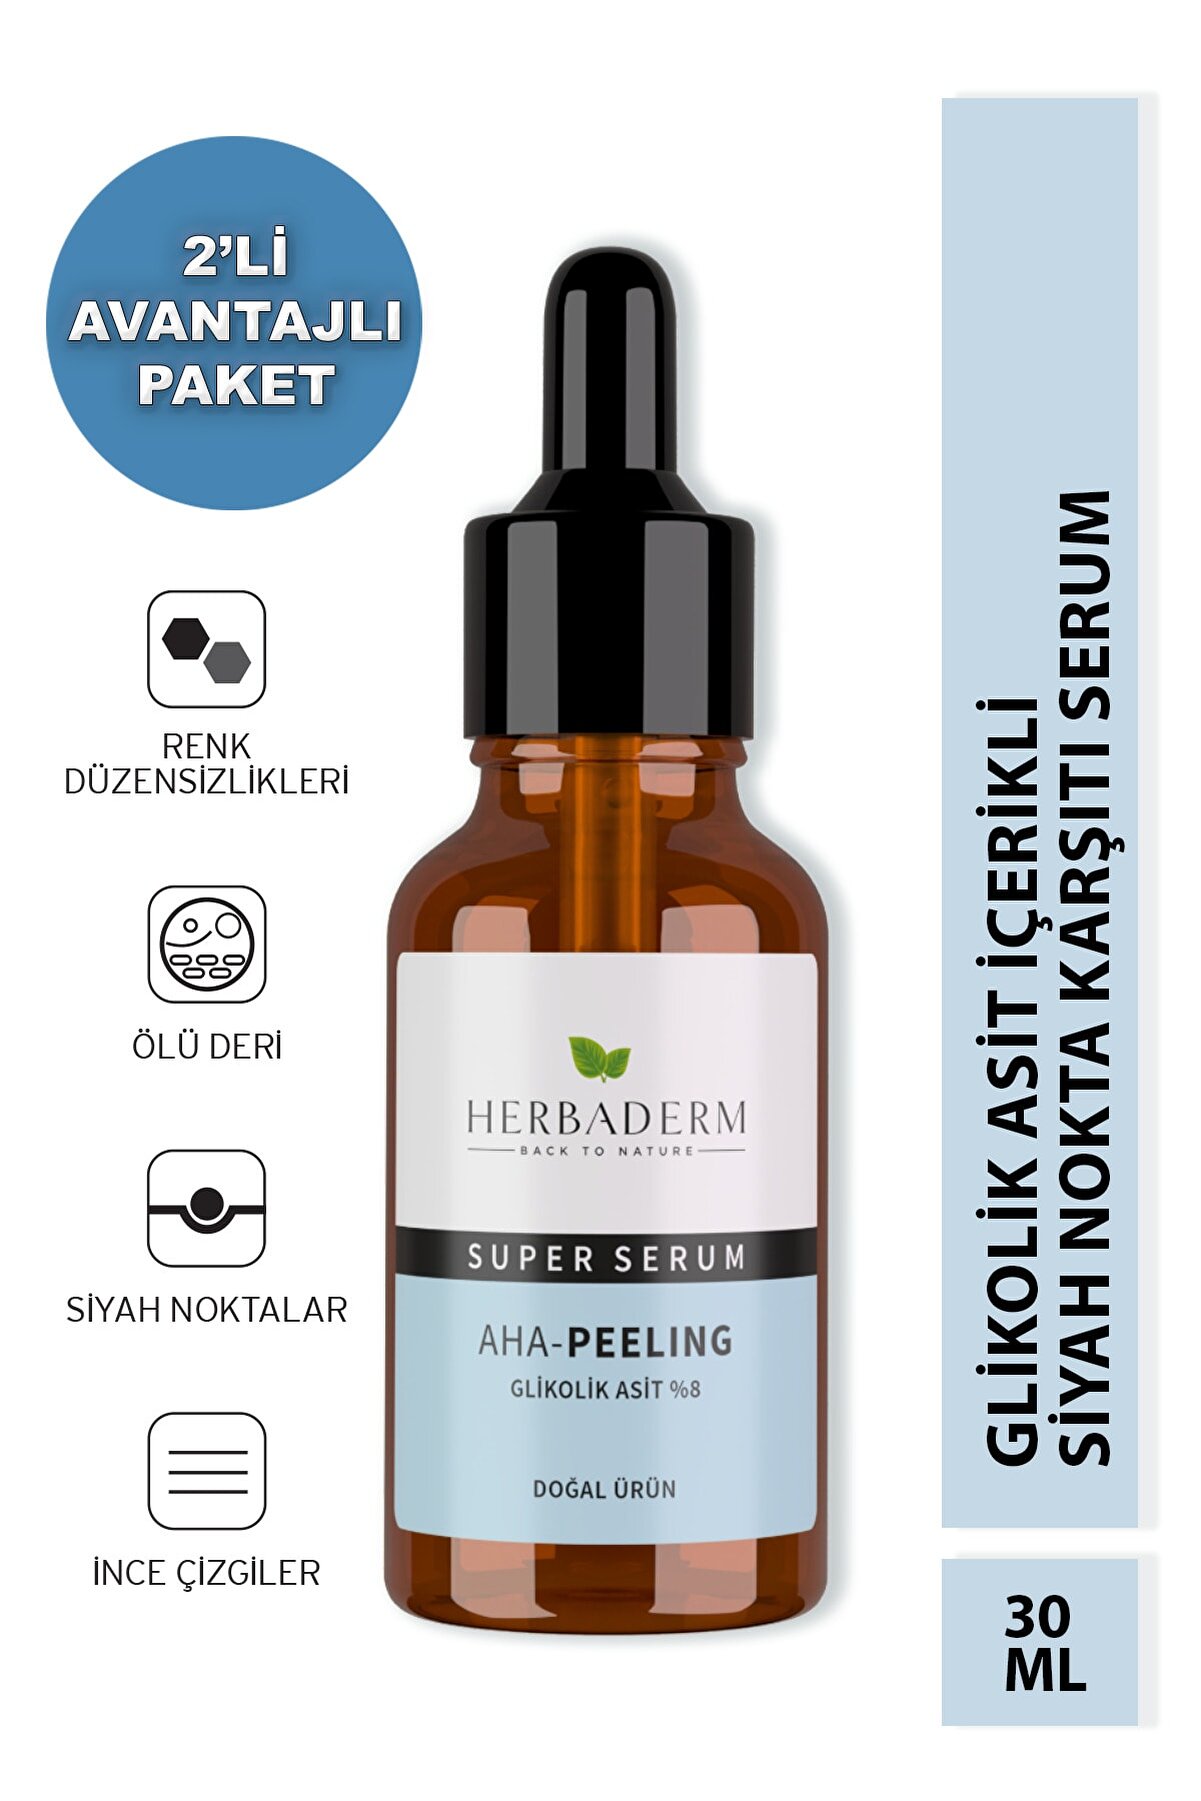 Herbaderm Superserum Aha Peeling 30 ml Glikolik Asit %8 2'li Avantajlı Paket